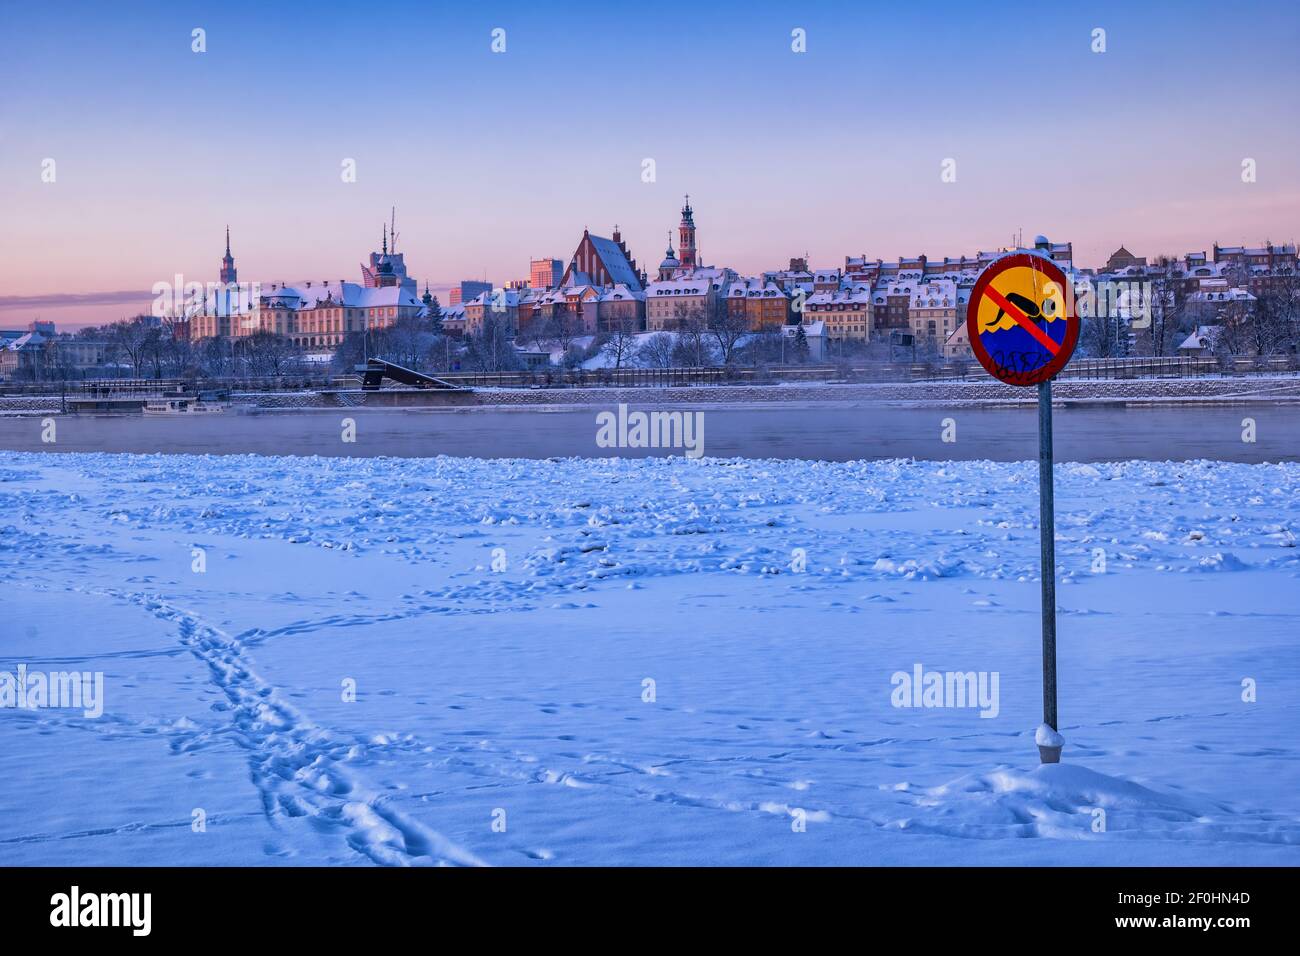 Kein Schwimmwarnschild am verschneiten Strand am Fluss Wisla im Winter, Stadt Warschau bei Sonnenaufgang in Polen, Altstadt Skyline im Hintergrund. Stockfoto